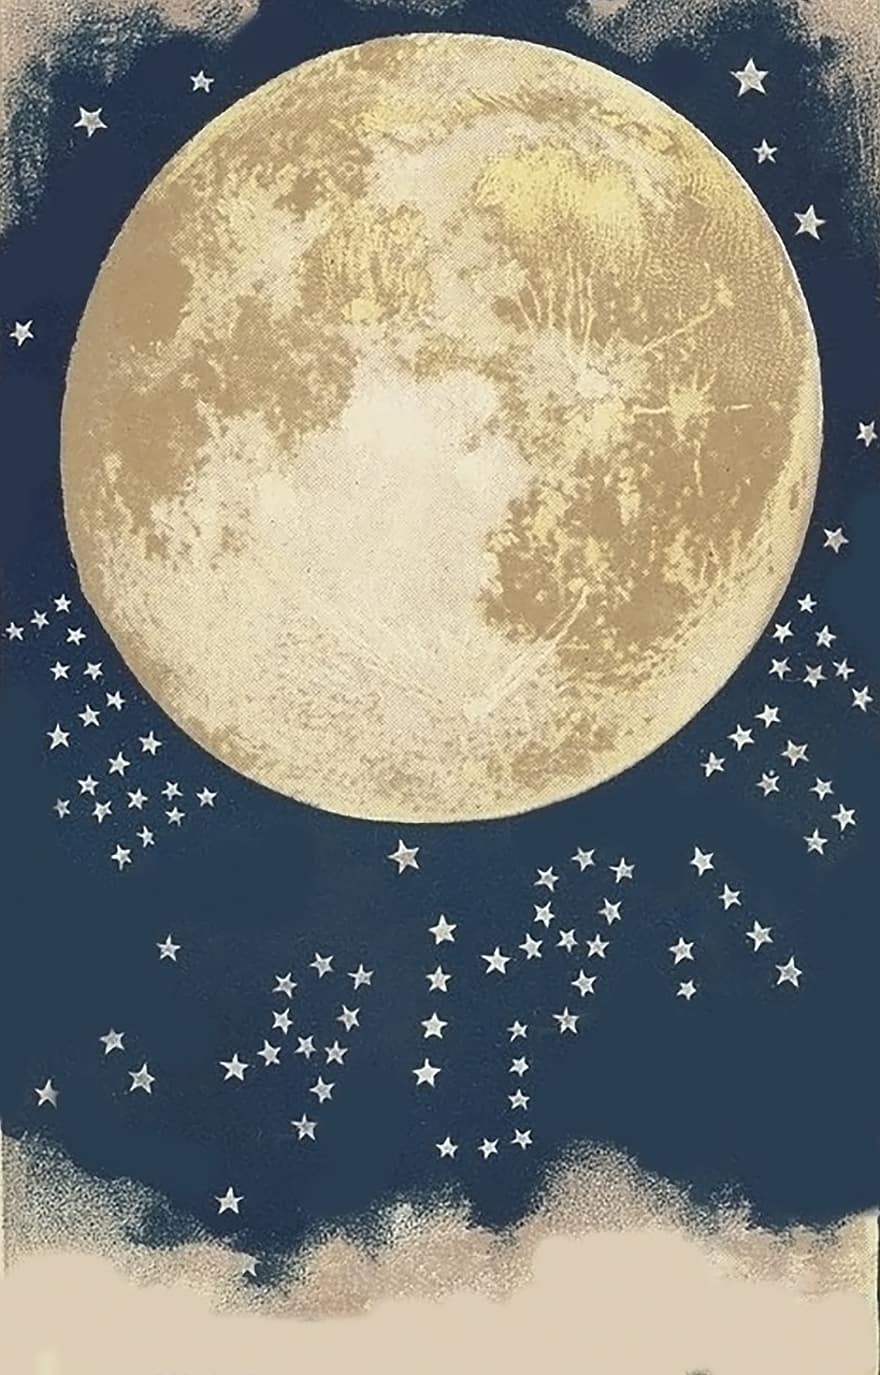 měsíc, hvězd, krátery, noc, měsíční svit, nebe, prostor, astronomie, vinobraní, modrý, luna